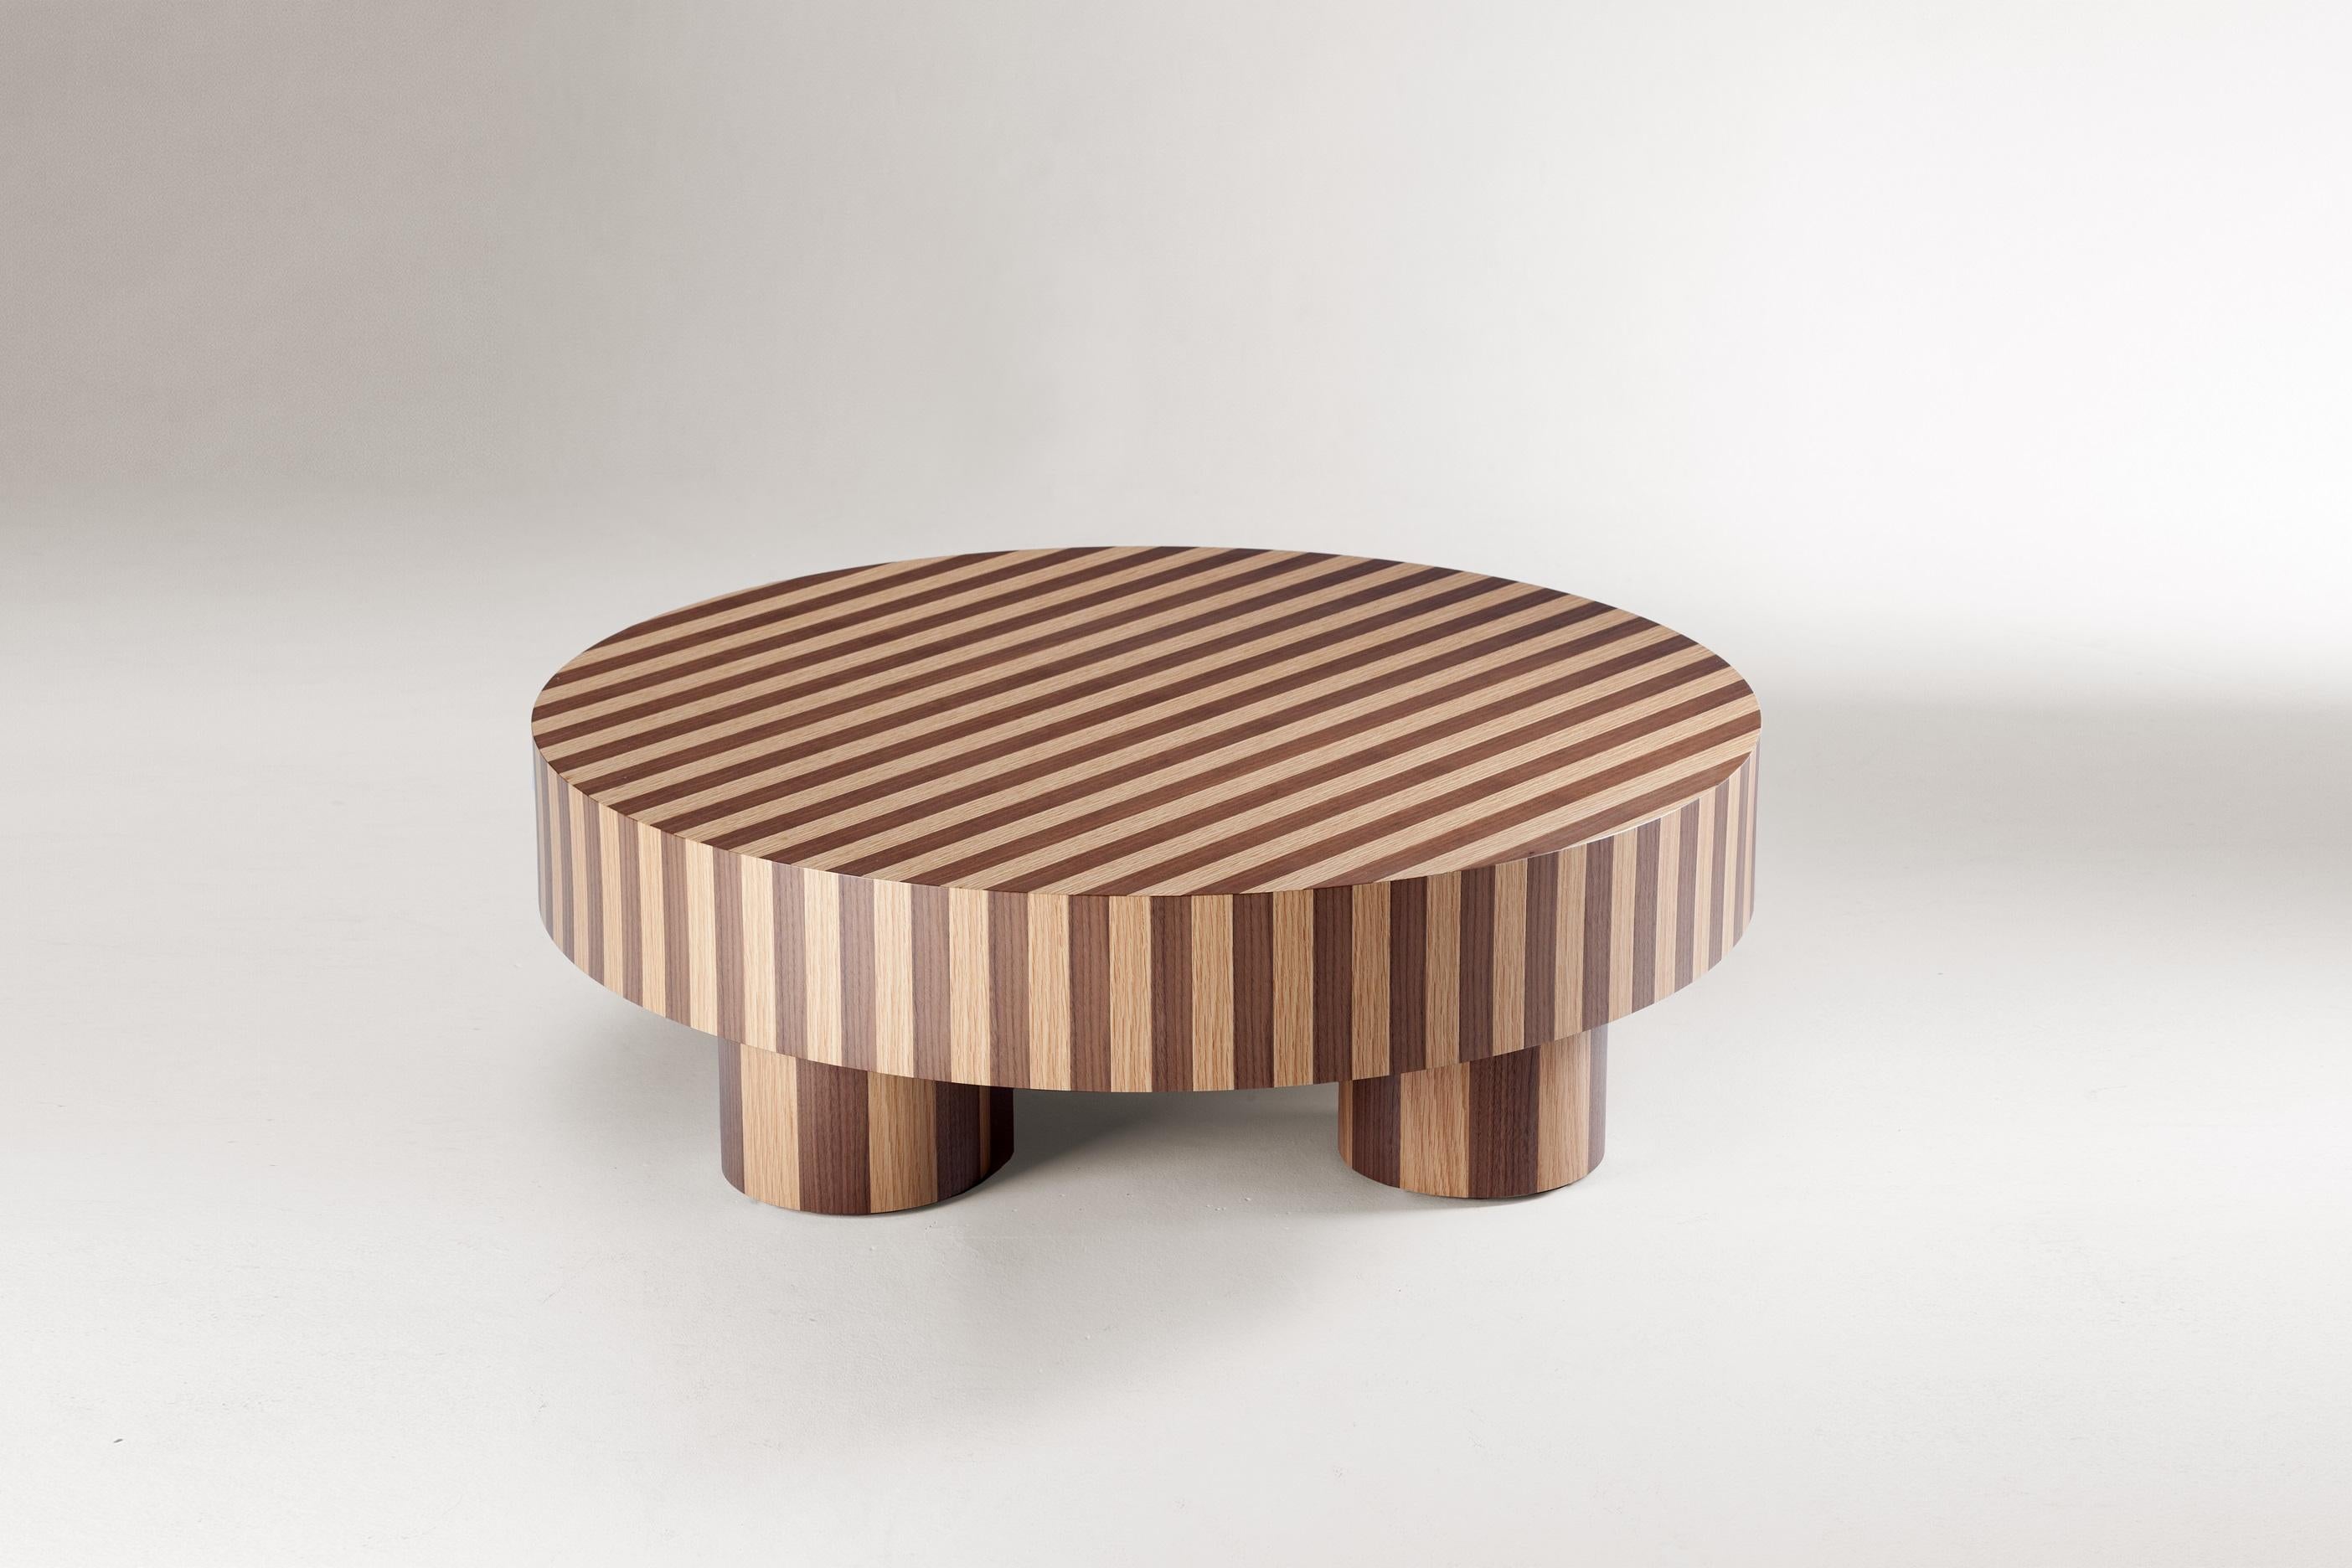 Nusa est notre dernière collection de tables, où l'inspiration de l'Asie du Sud-Est rencontre l'artisanat moderne. Chaque table est le fruit d'une technique de marqueterie ancestrale, mêlant harmonieusement deux bois distincts. Immergez votre espace